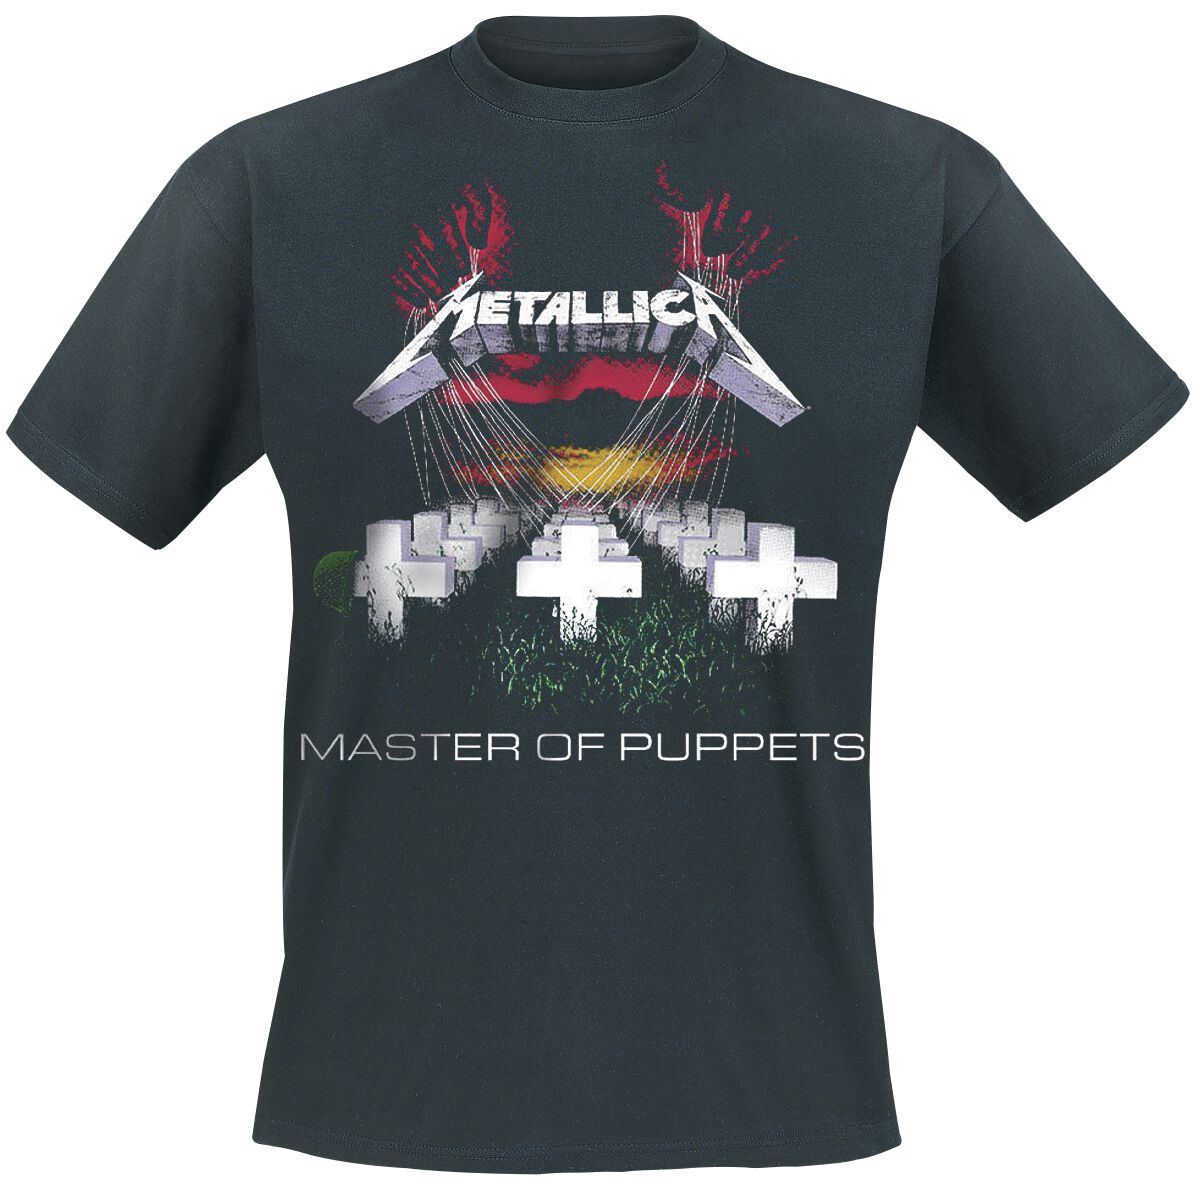 Metallica T-Shirt - Master Of Puppets - S bis 5XL - für Männer - Größe XXL - schwarz  - Lizenziertes Merchandise!